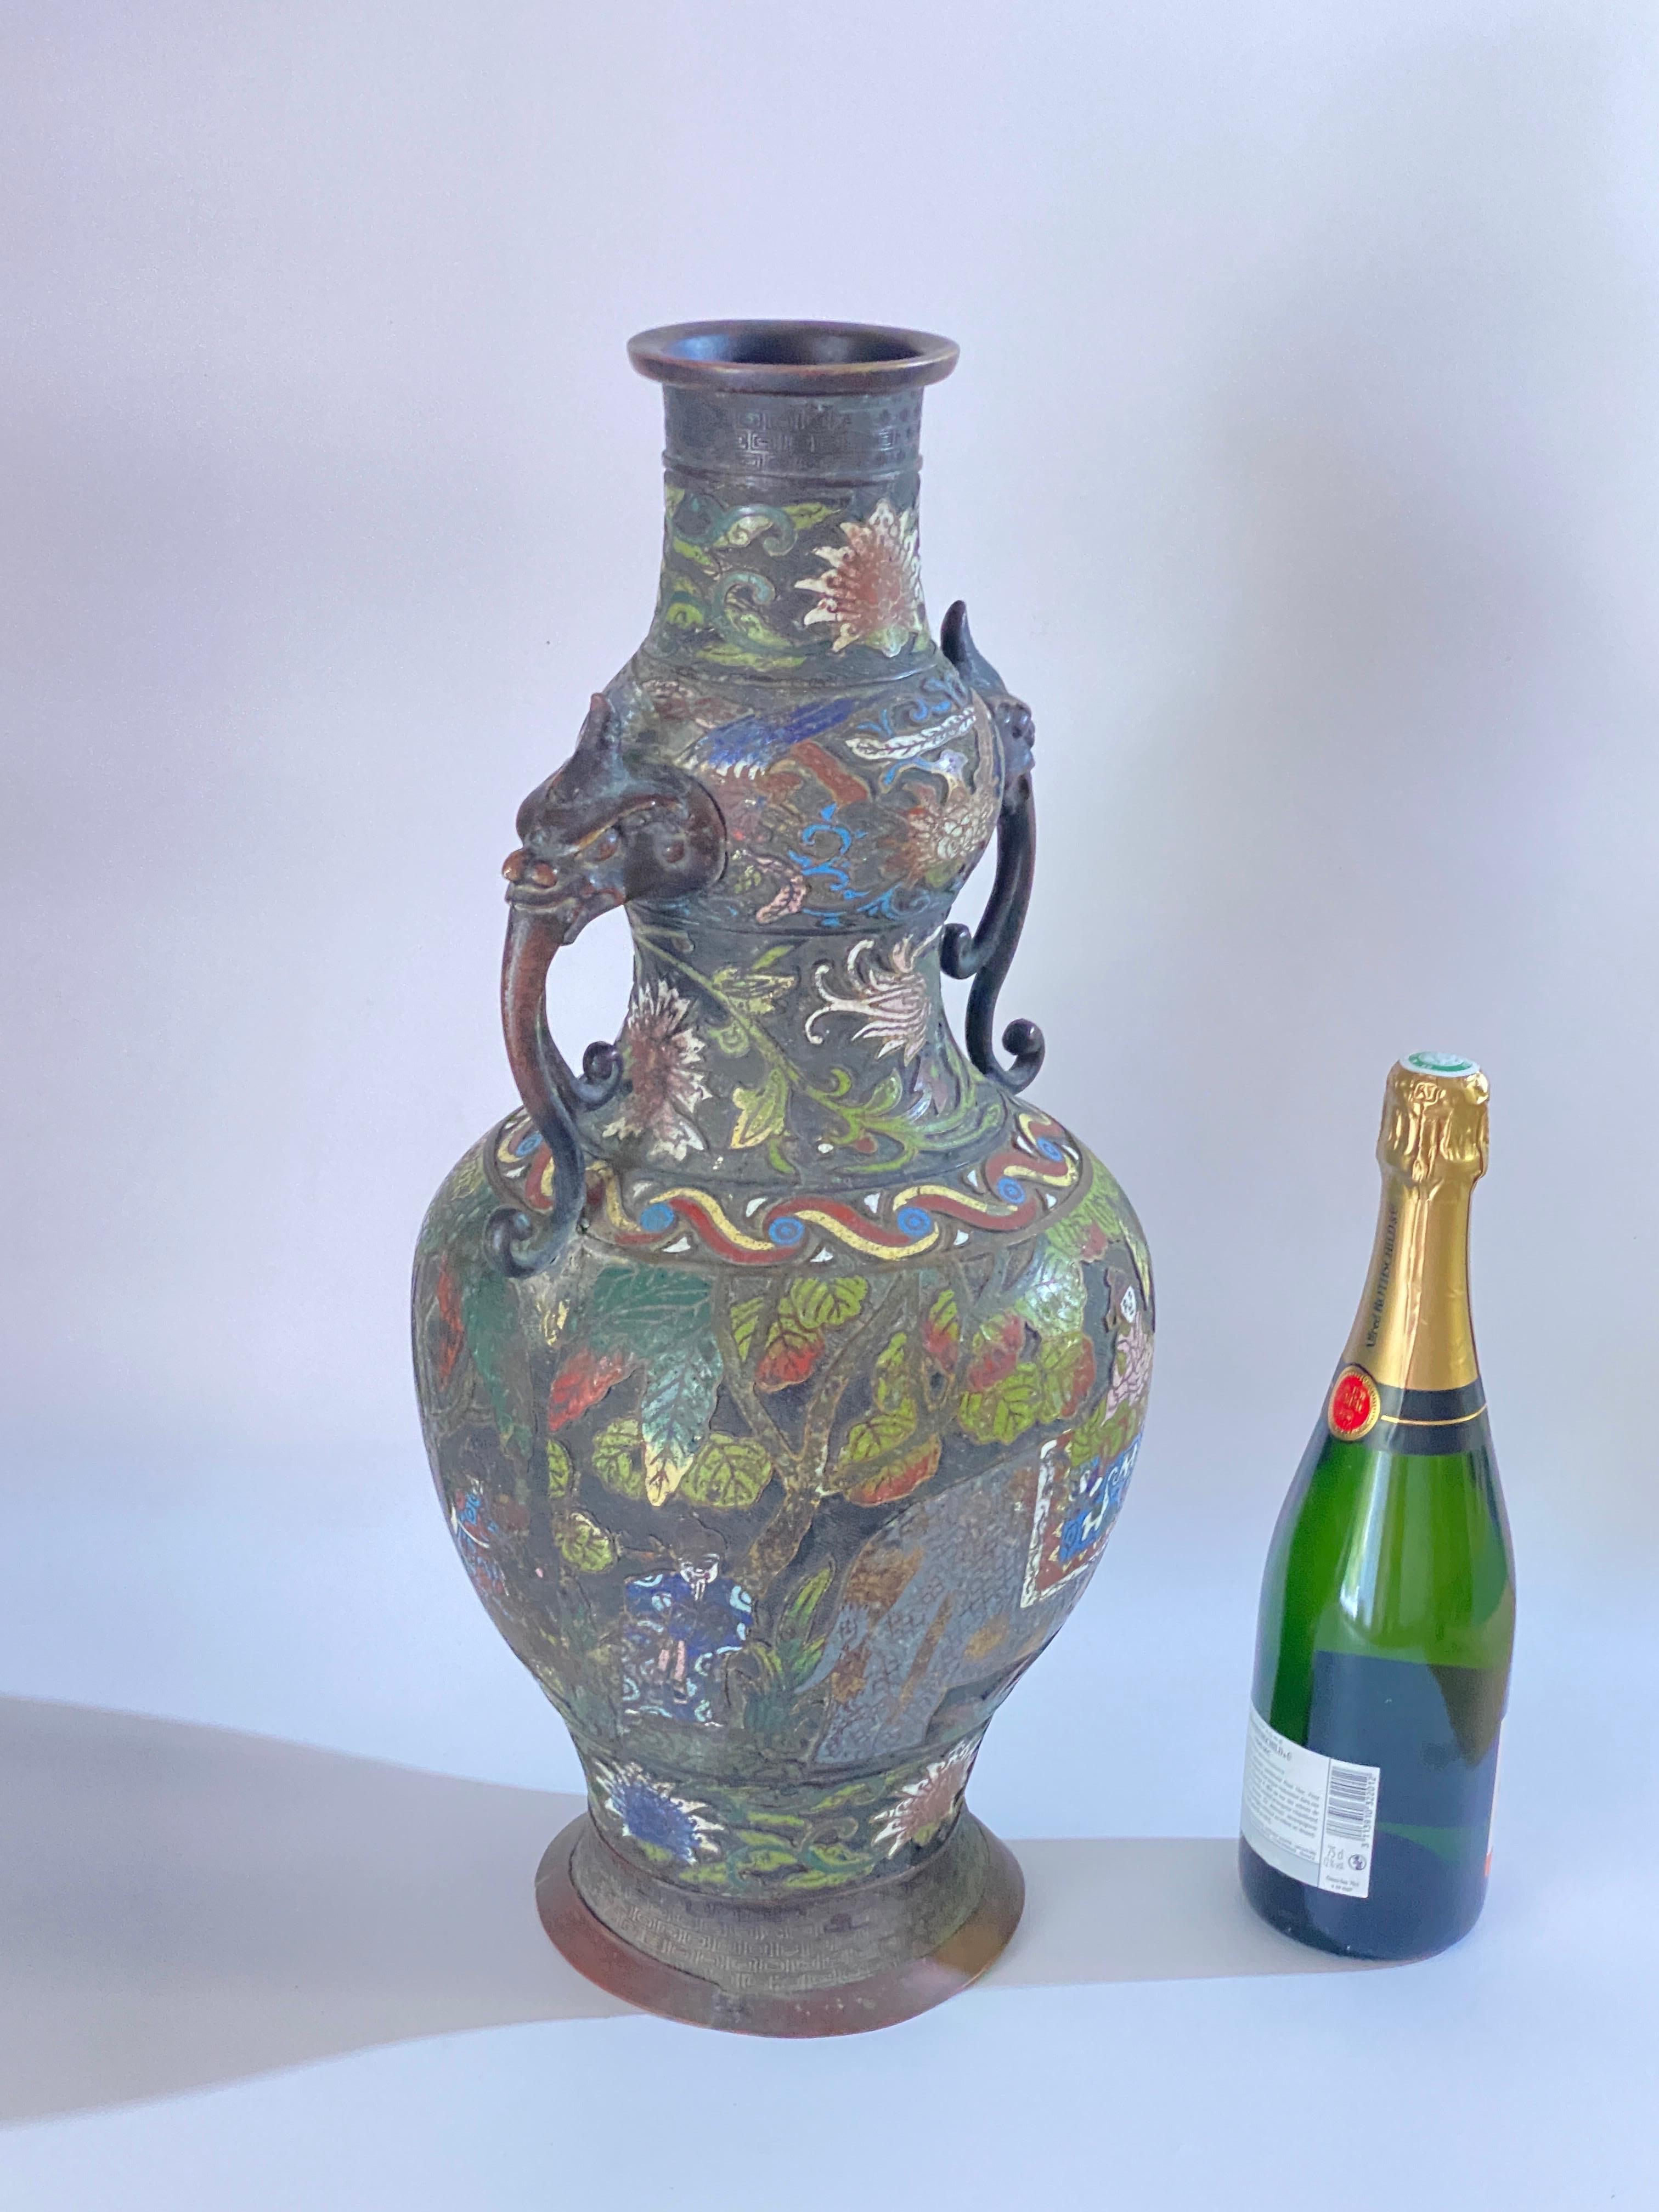 Grand vase en bronze émaillé cloisonné et champlevé, datant de la fin du XIXe siècle et datant de la dynastie Qing, vers 1890. Ce vase de style archaïque, doté de deux anses, est somptueusement décoré d'émaux colorés représentant des figures